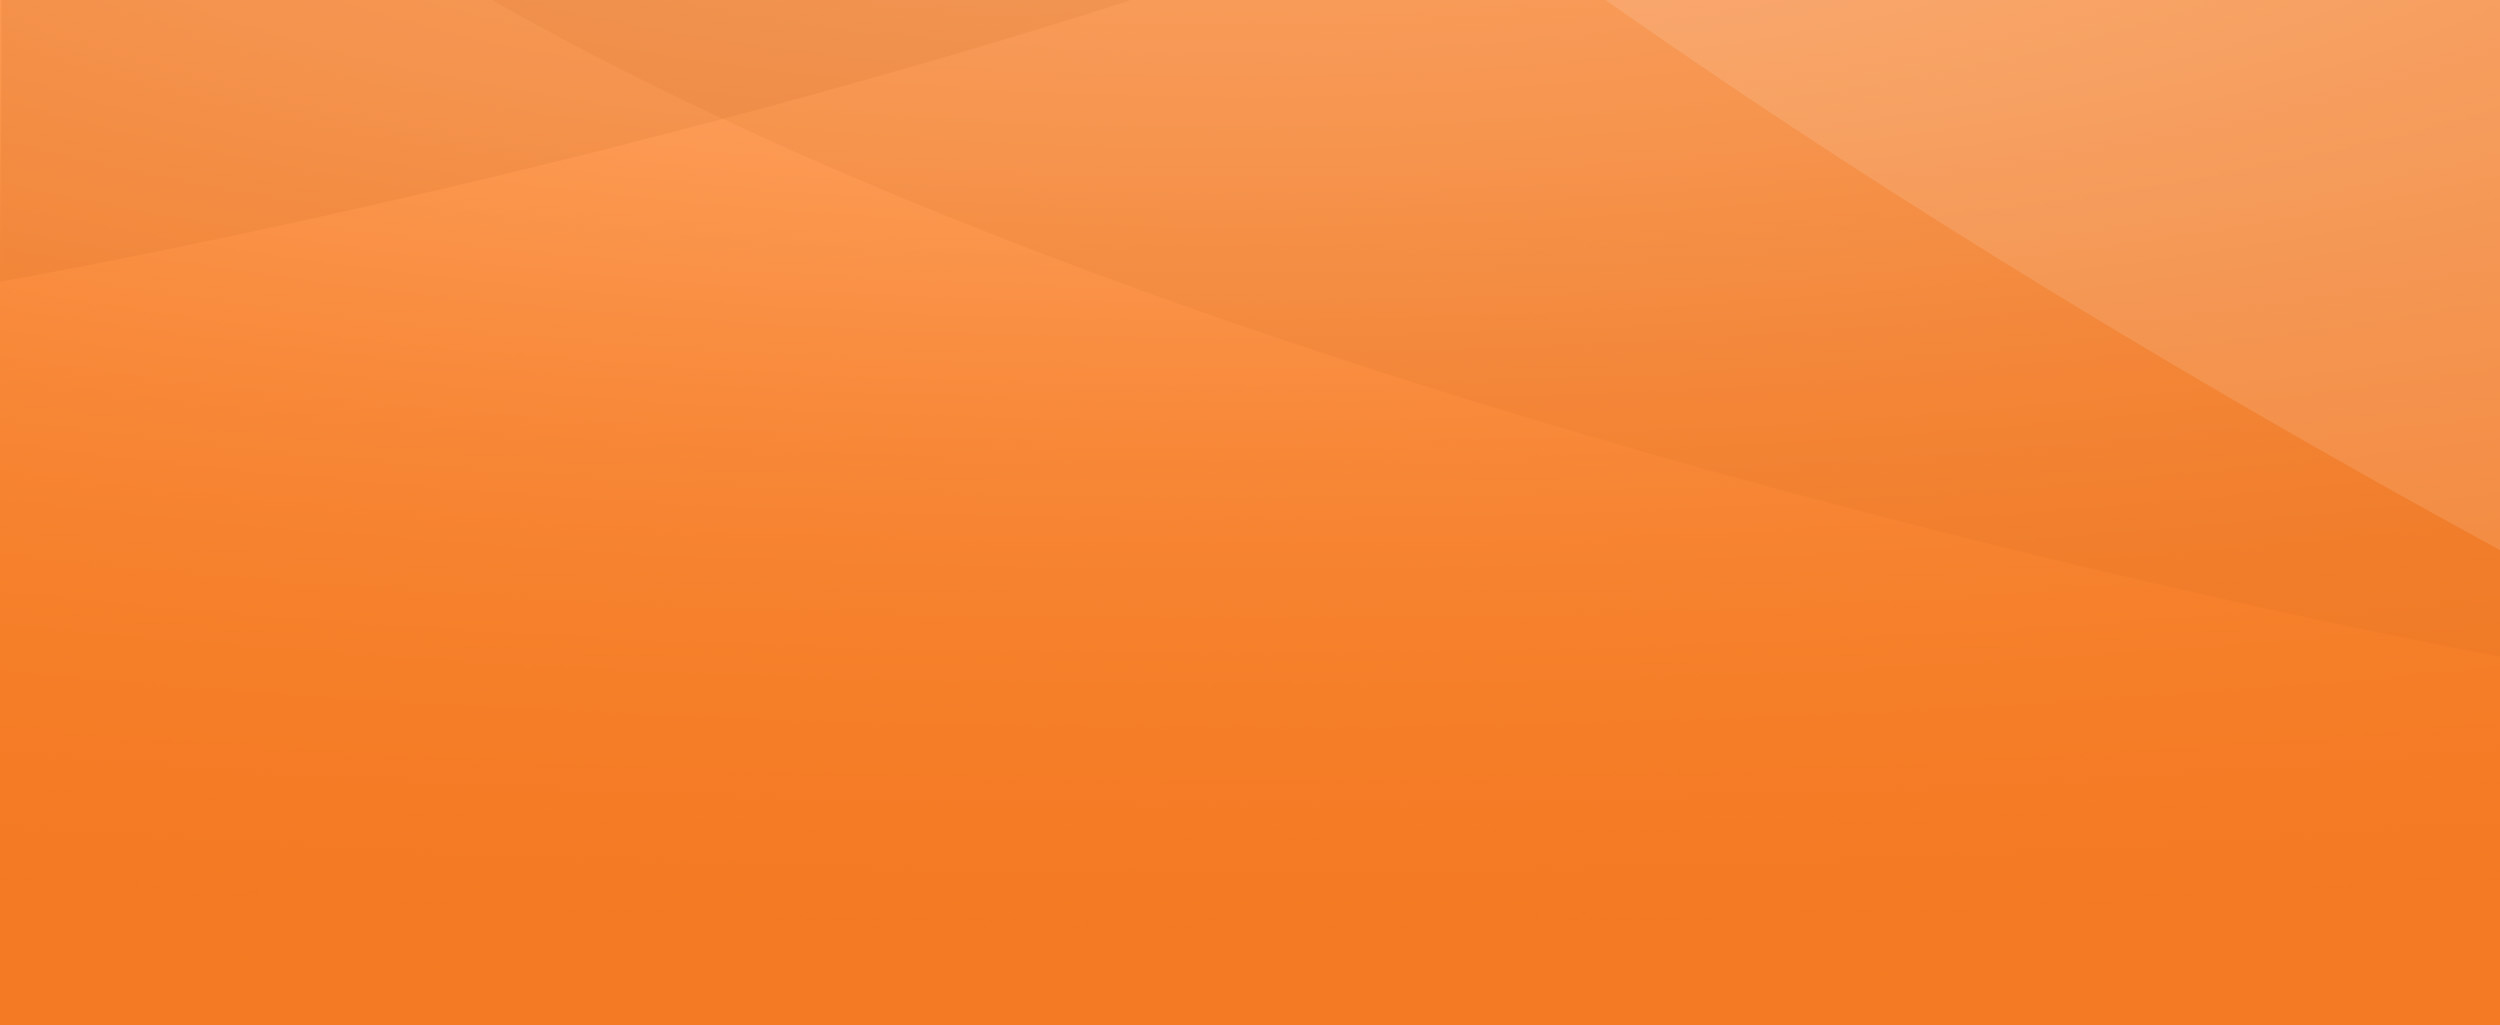 orange-textured-background-optimized